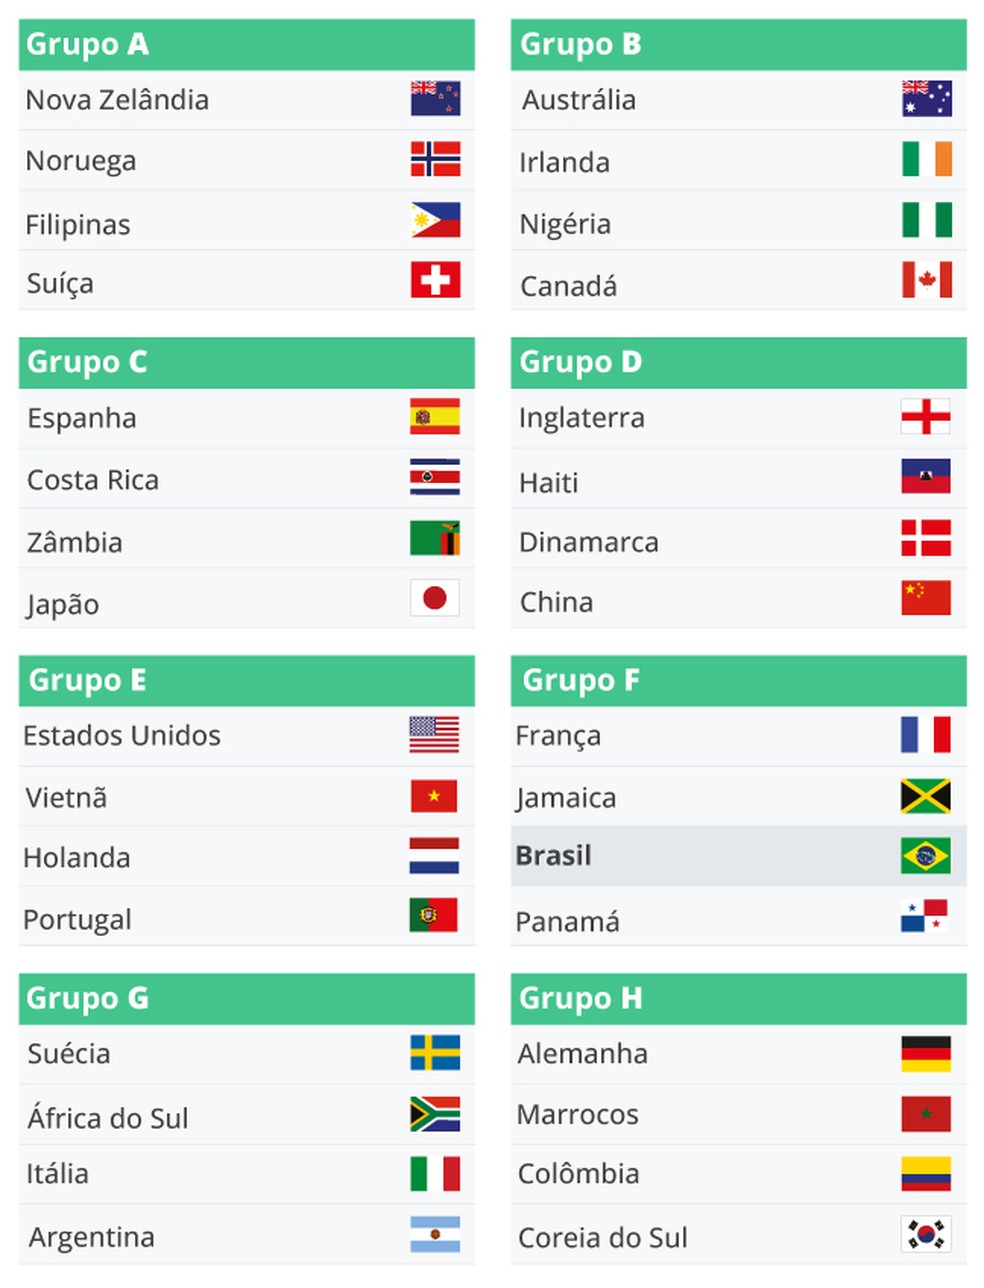 Brasil: próximo jogo na Copa do Mundo Feminina 2023; quando será?